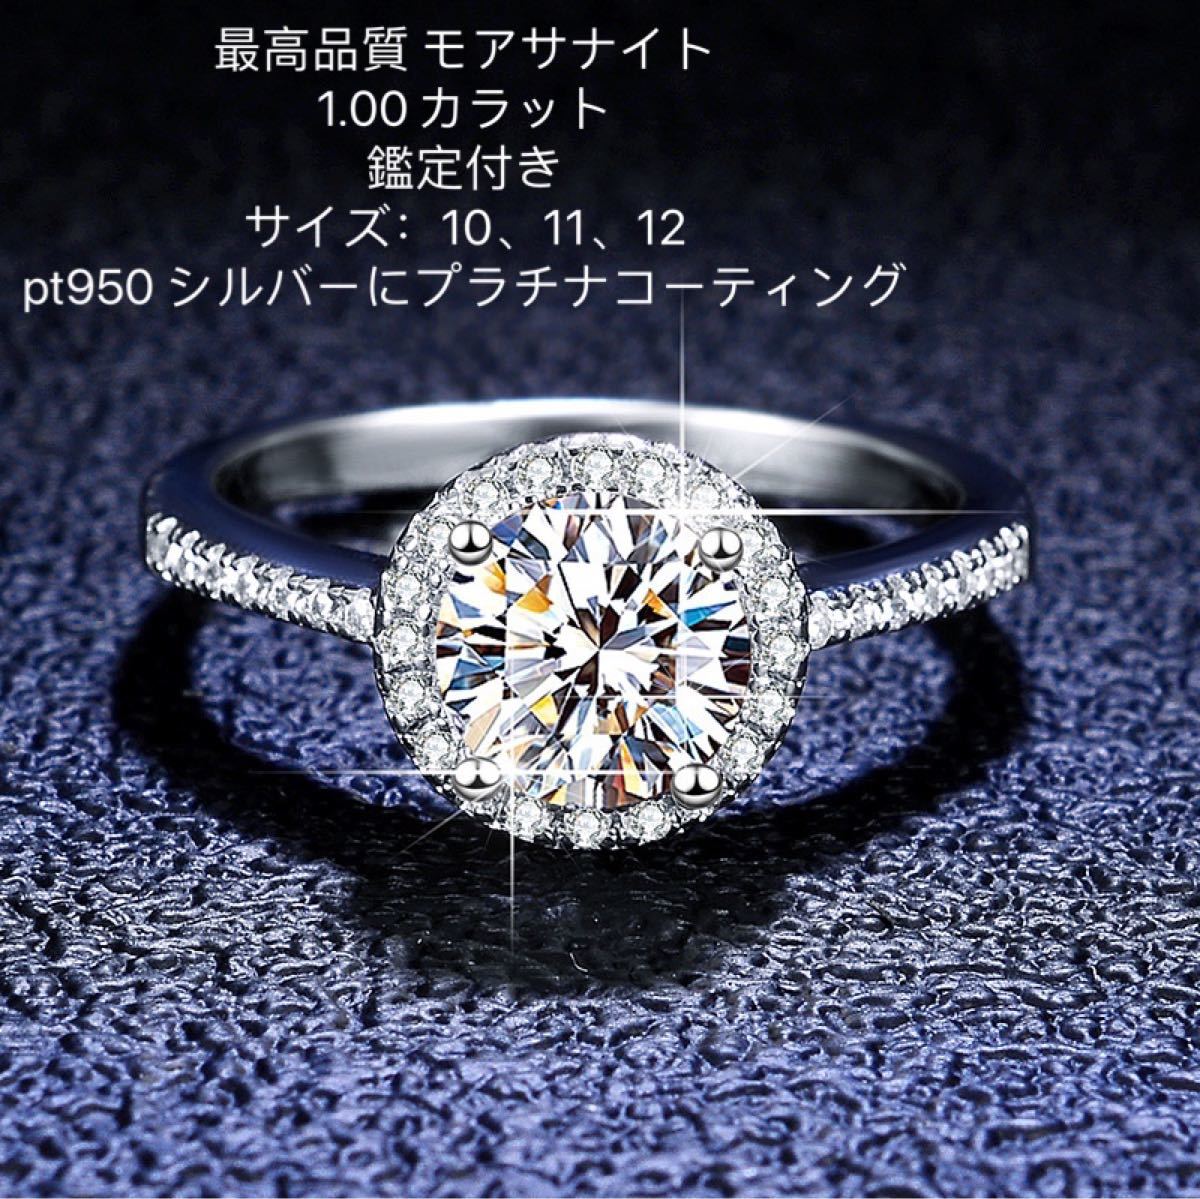 高品質. PT 950 プラチナの定番指輪1カラットの女性のダイヤの指輪-